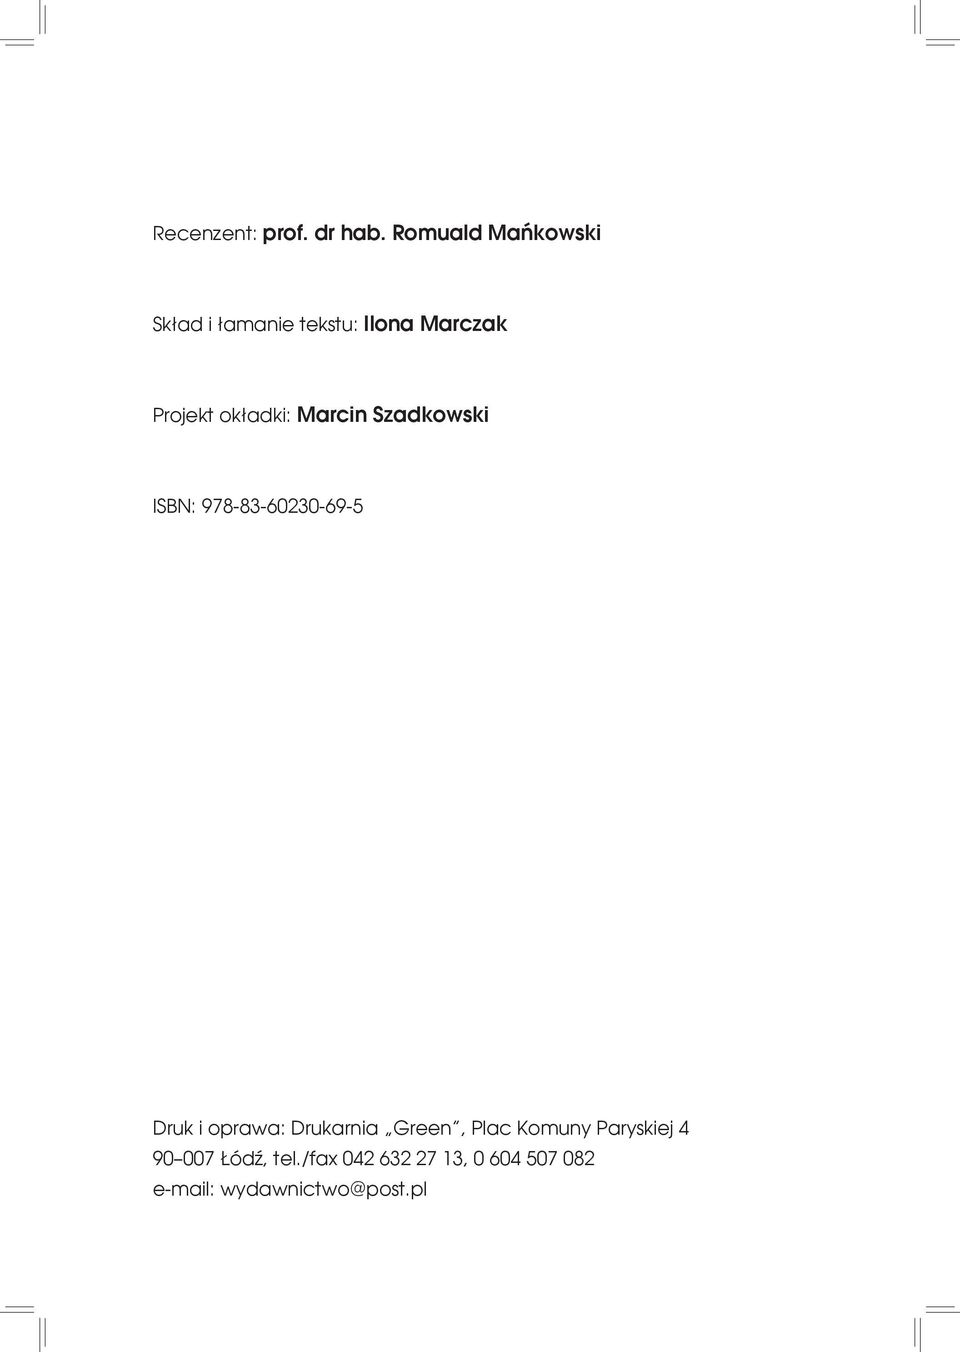 okładki: Marcin Szadkowski ISBN: 978-83-60230-69-5 Druk i oprawa: